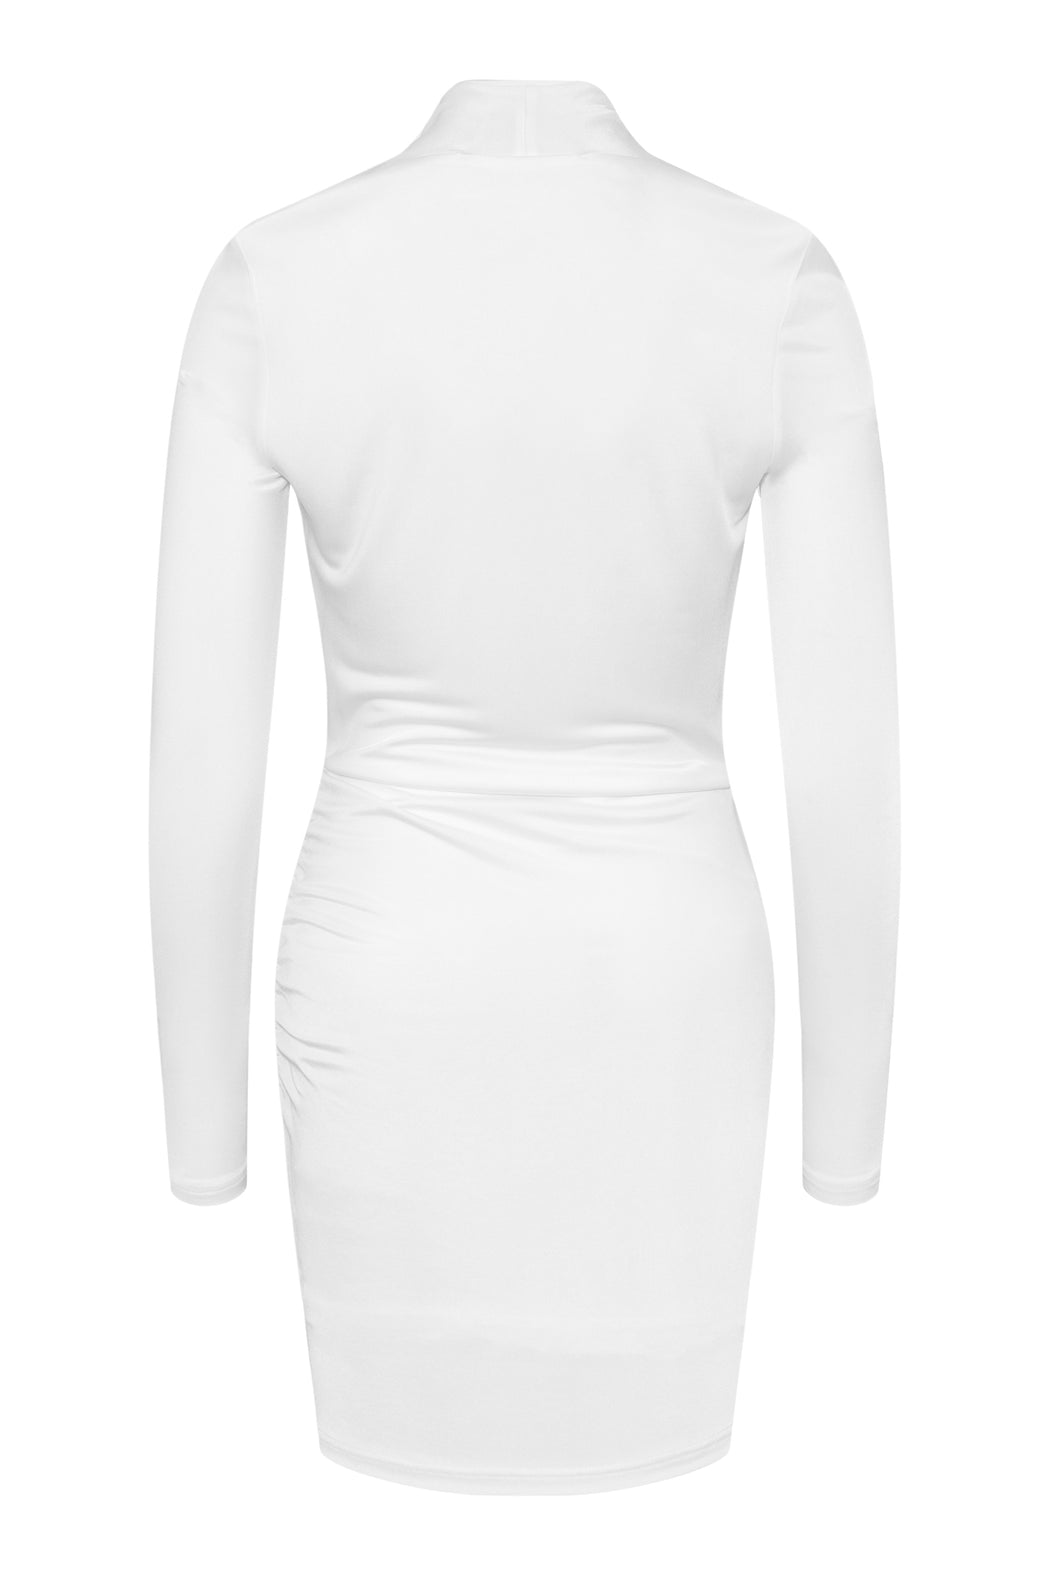 Envelope1976 Opening dress short, White  White